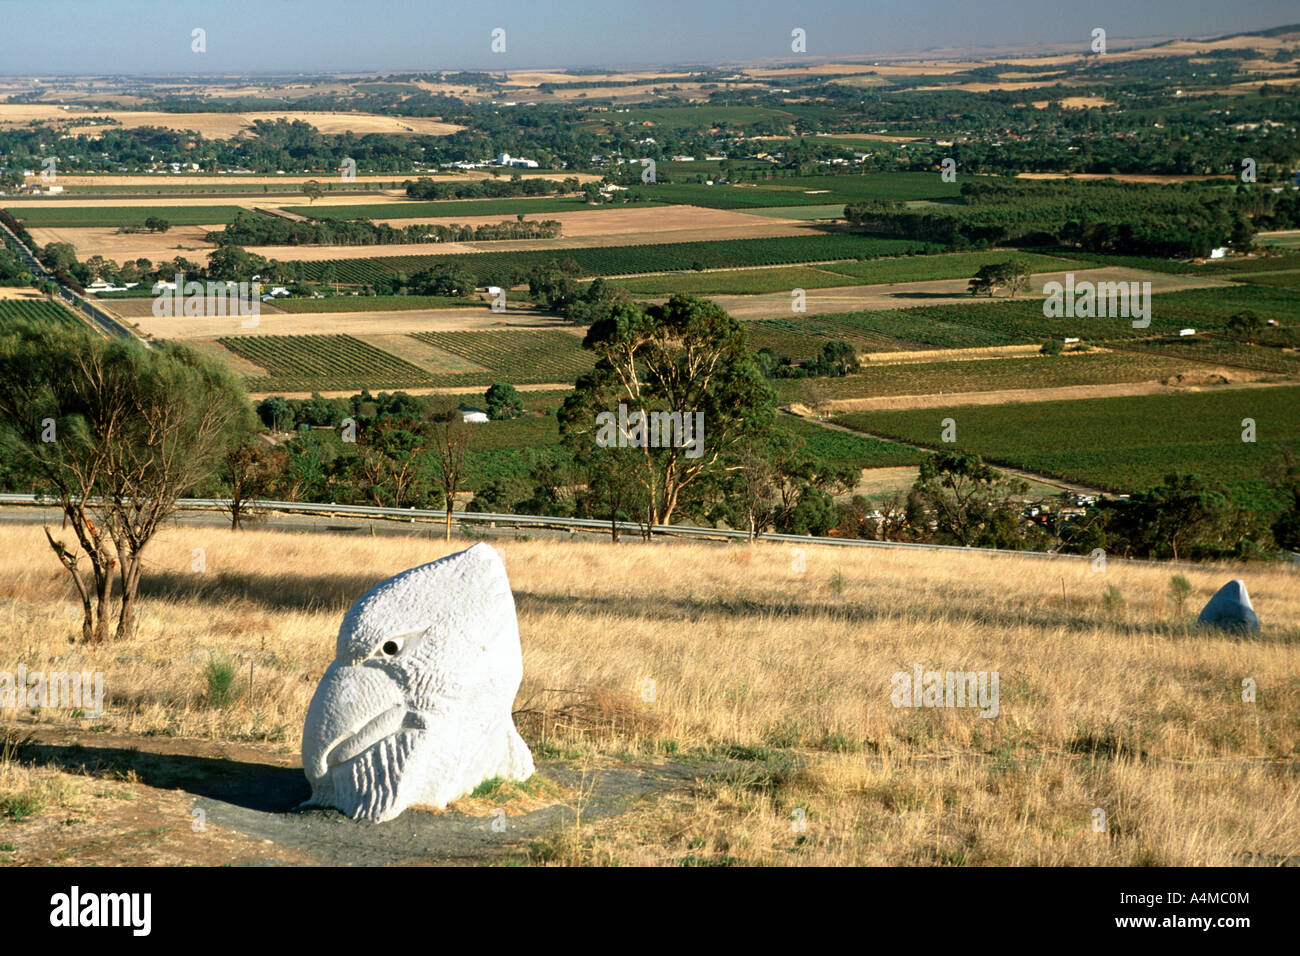 Parc des sculptures de la Vallée de Barossa, Australie-Méridionale. Banque D'Images